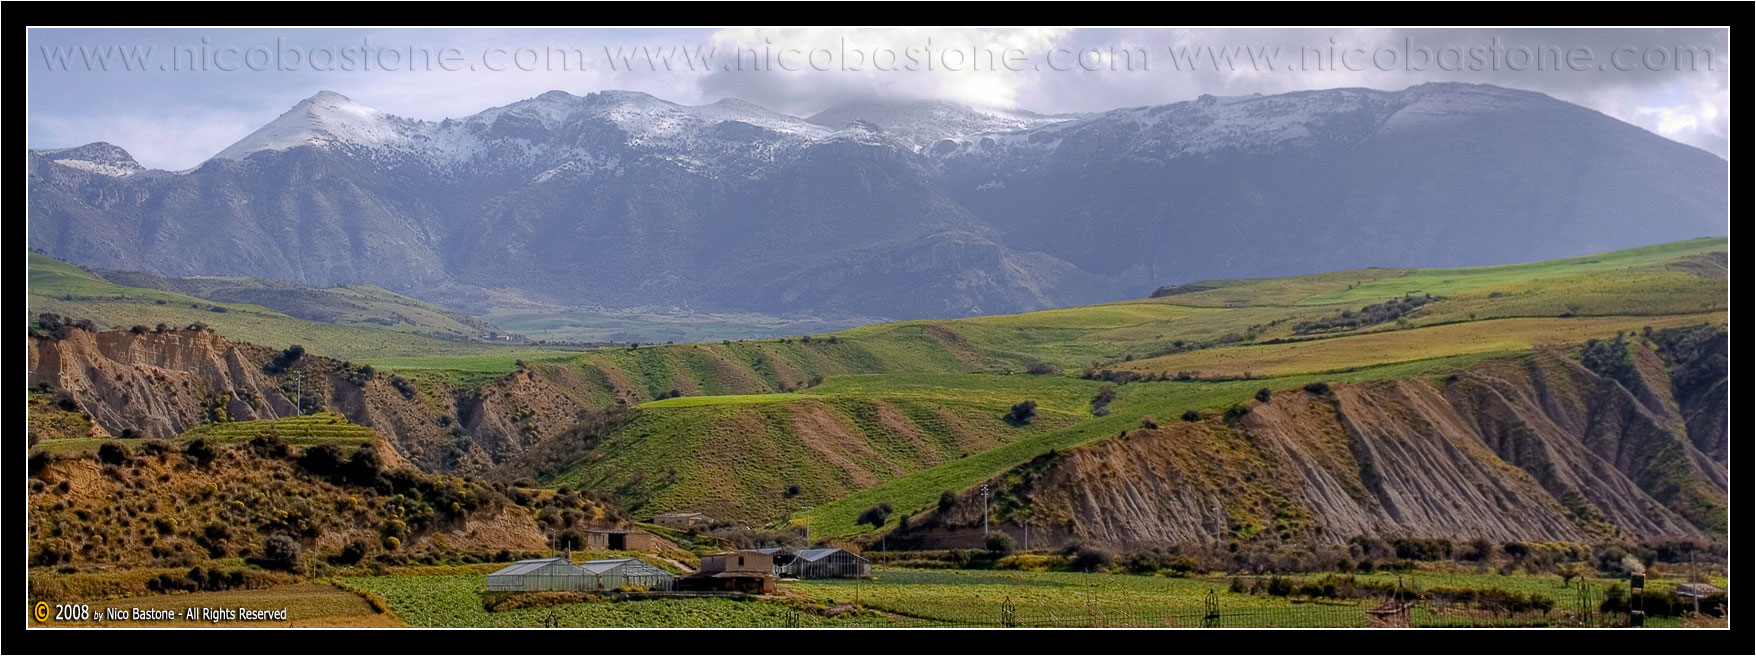 Monti delle Madonie. Paesaggio in un giorno d'inverno 2 - Madonie mountains. Landscape in a winter day 2"